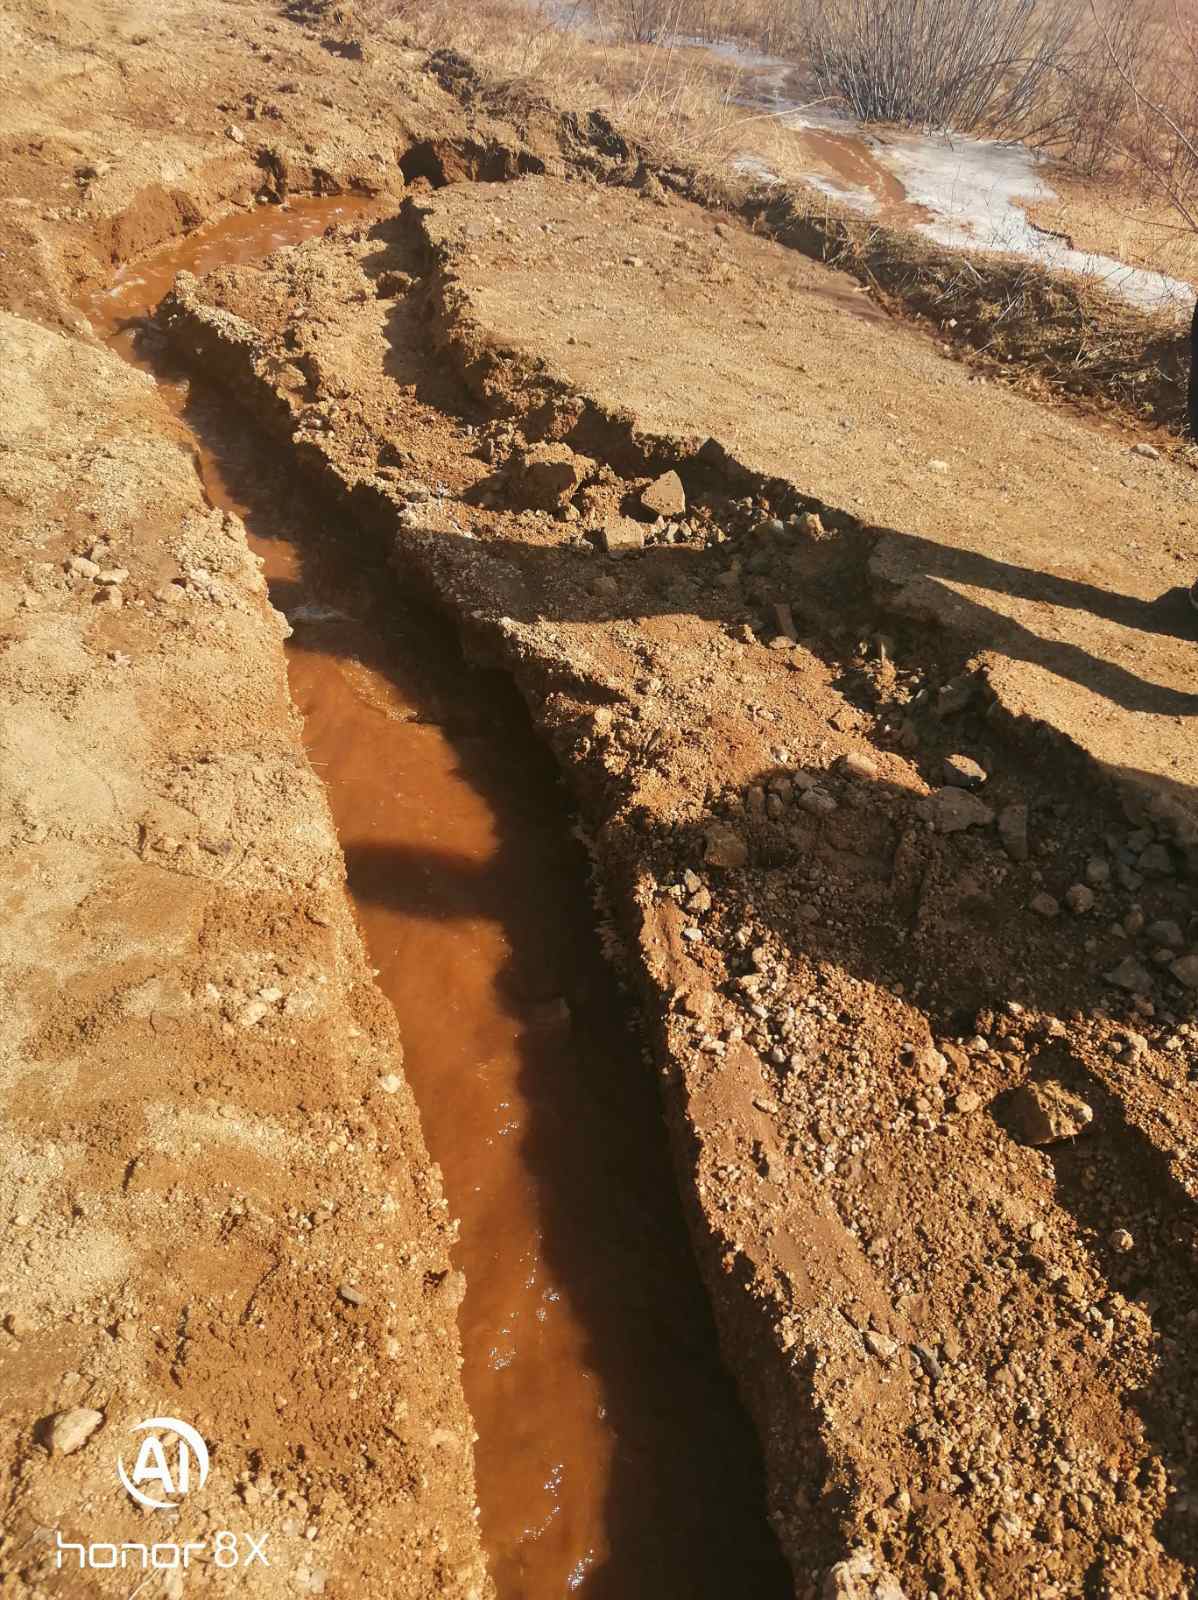 Прокуратура потребовала восстановить дорогу в забайкальском селе после публикации «Вечорки»